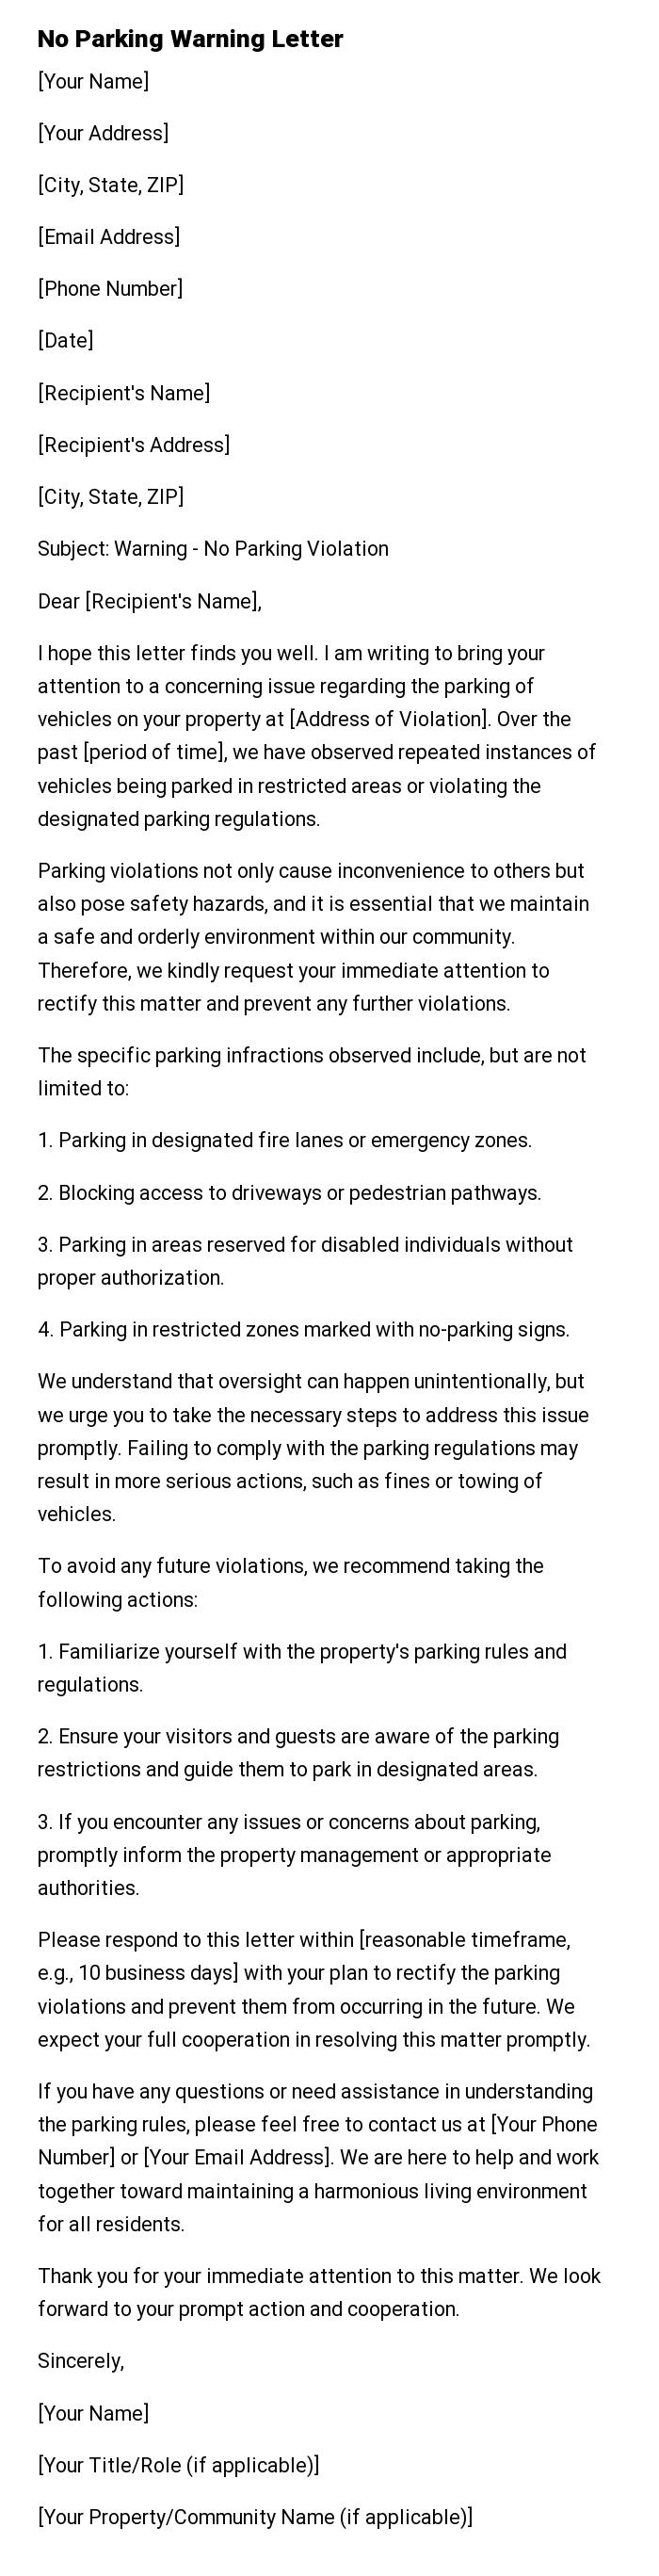 No Parking Warning Letter